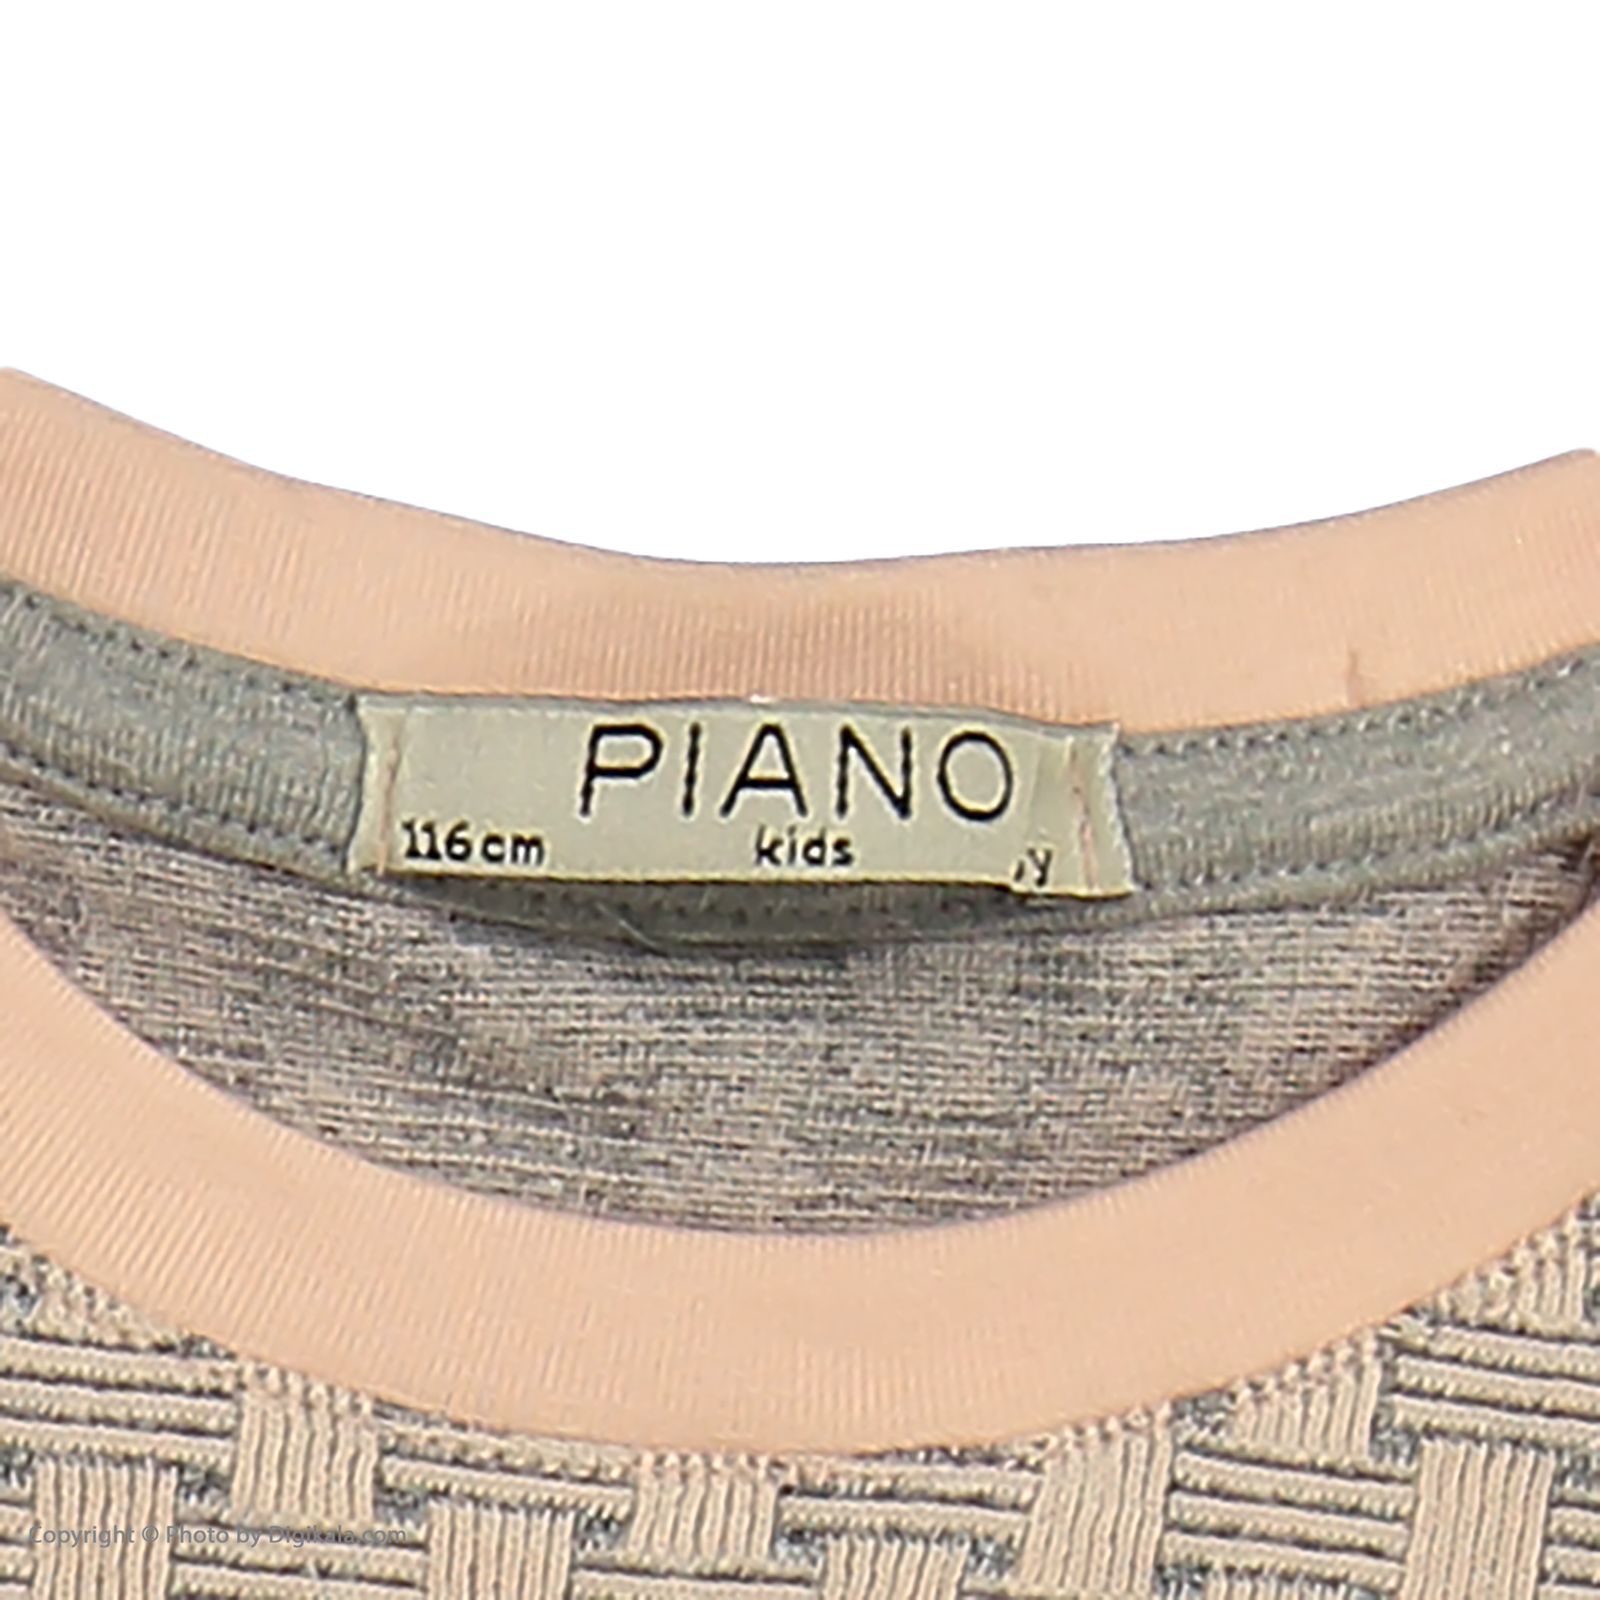 تی شرت دخترانه پیانو مدل 1009009901648-21 -  - 5